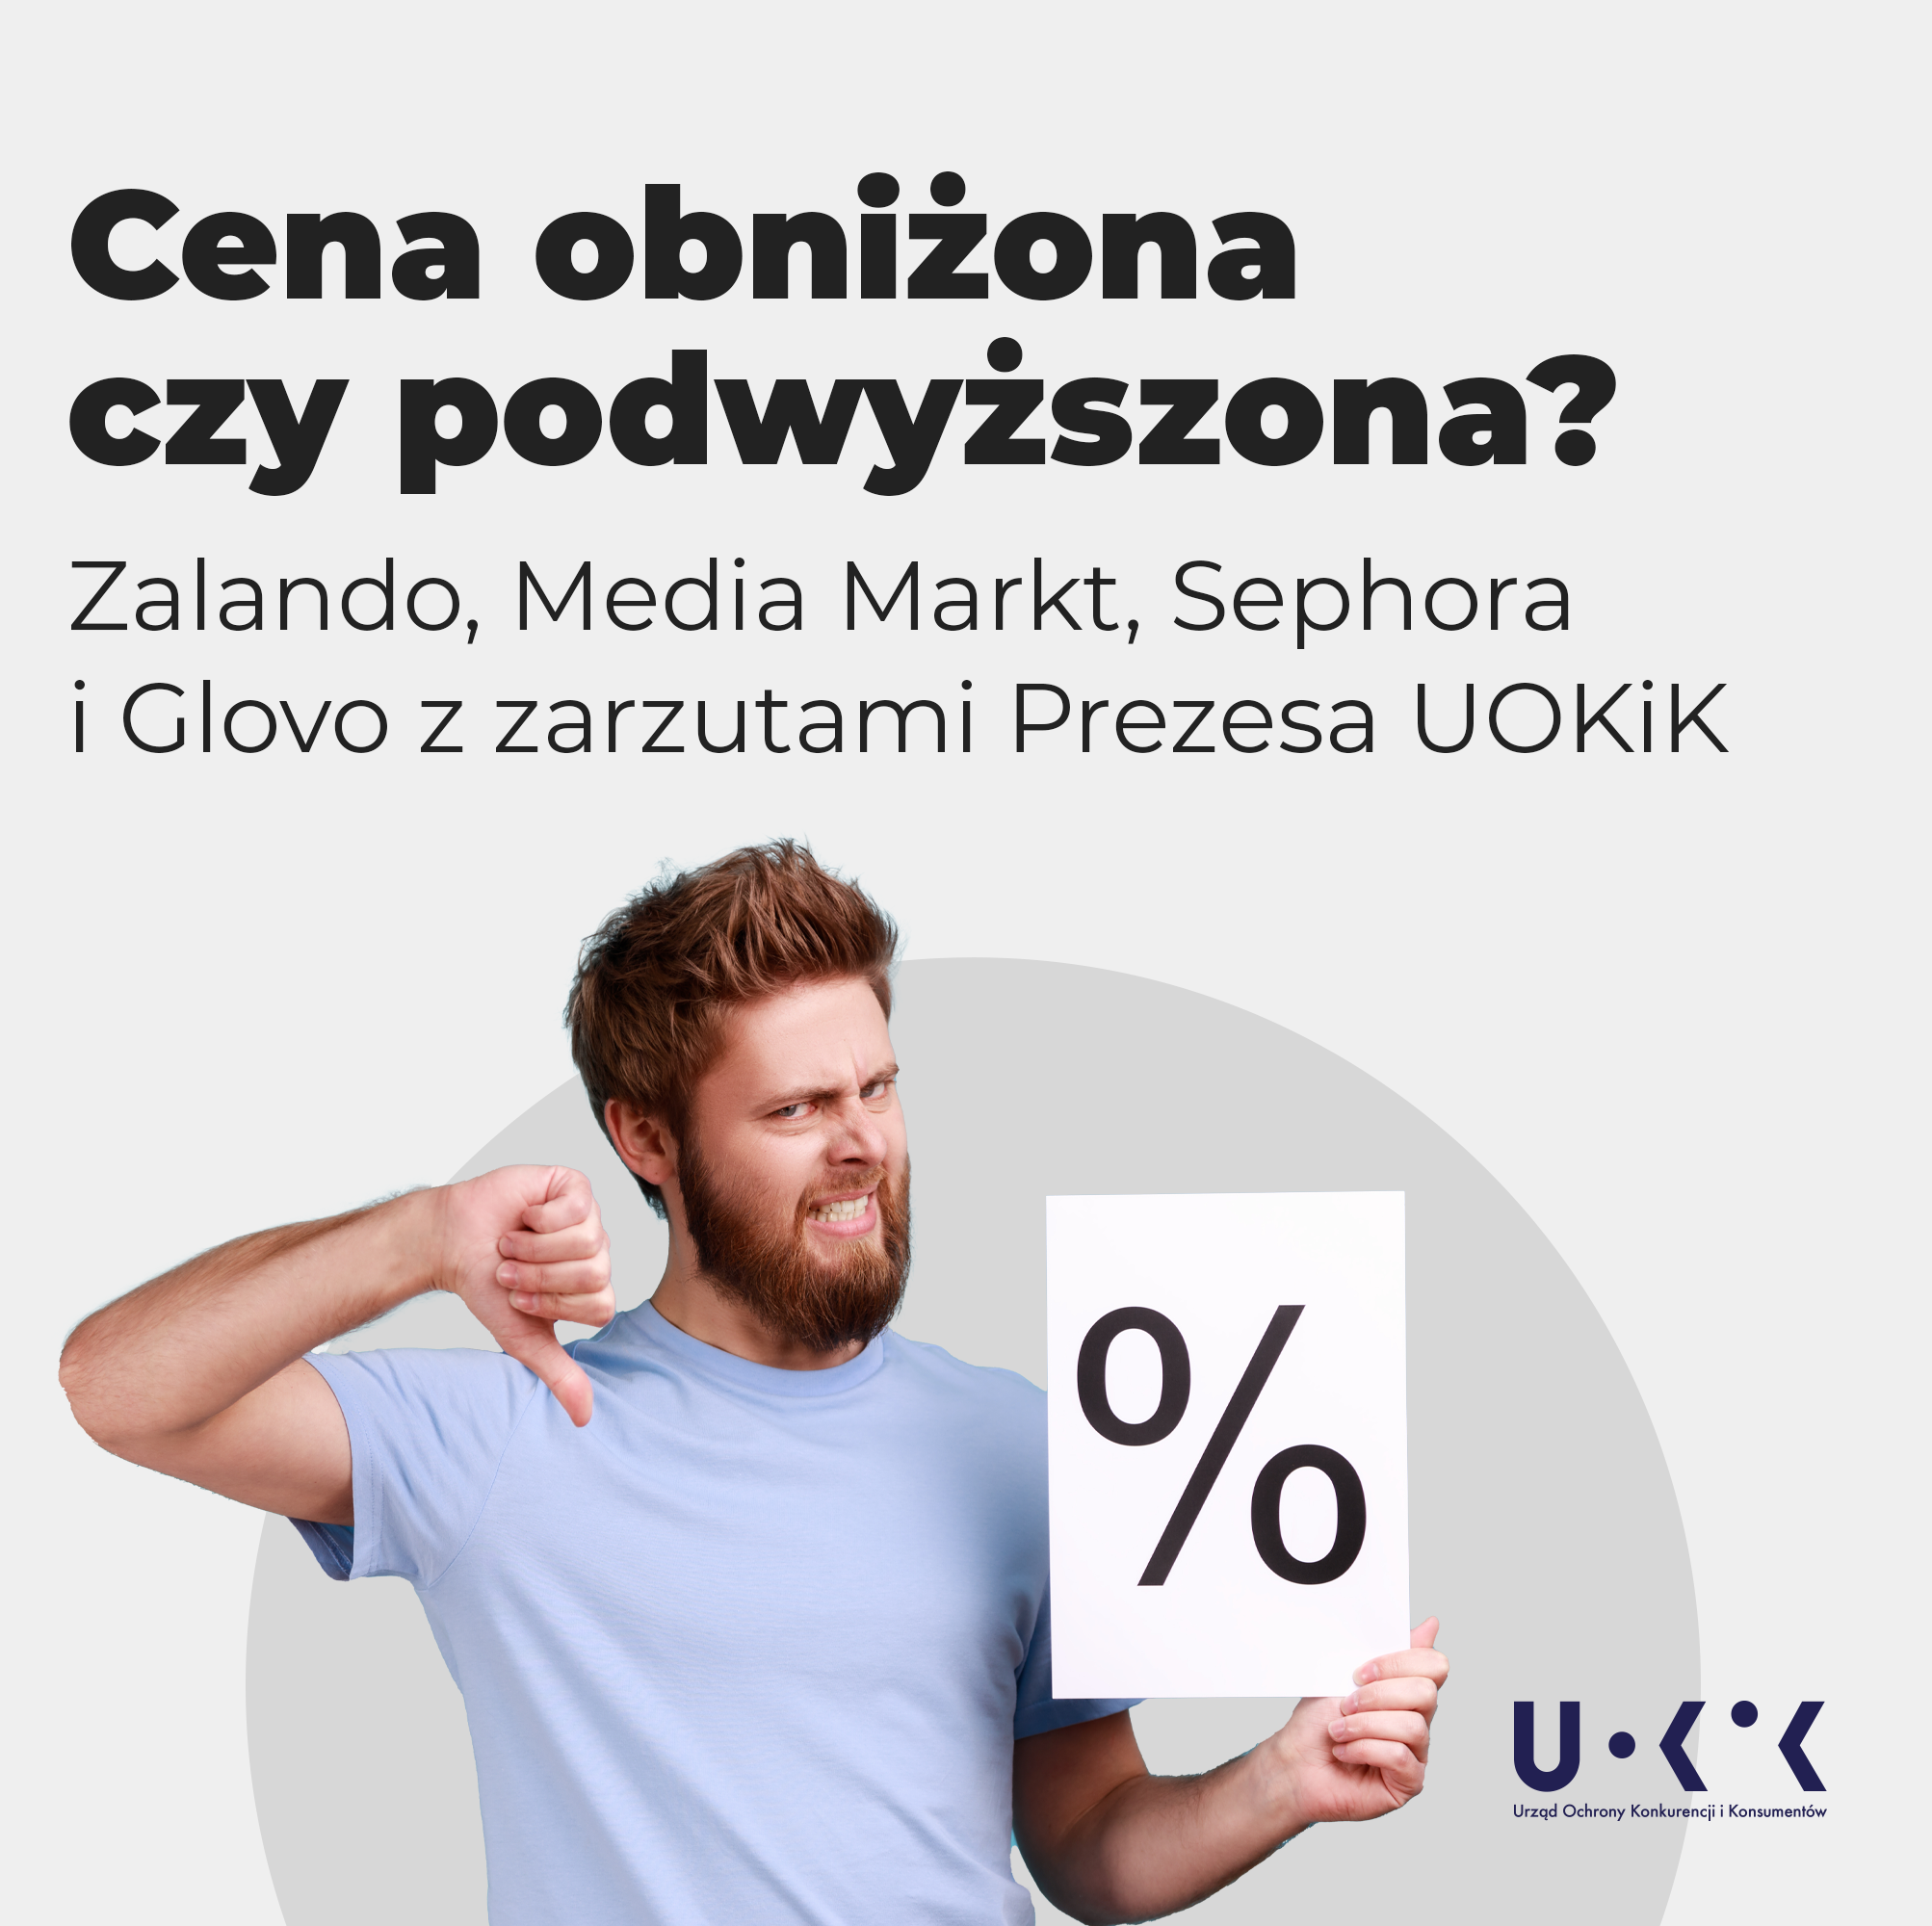 Zalando, Media Markt, Sephora, Glovo -za naruszenie praw konsumentów grozi im kara nawet do 10 proc. obrotu Nowyoutsourcing.pl